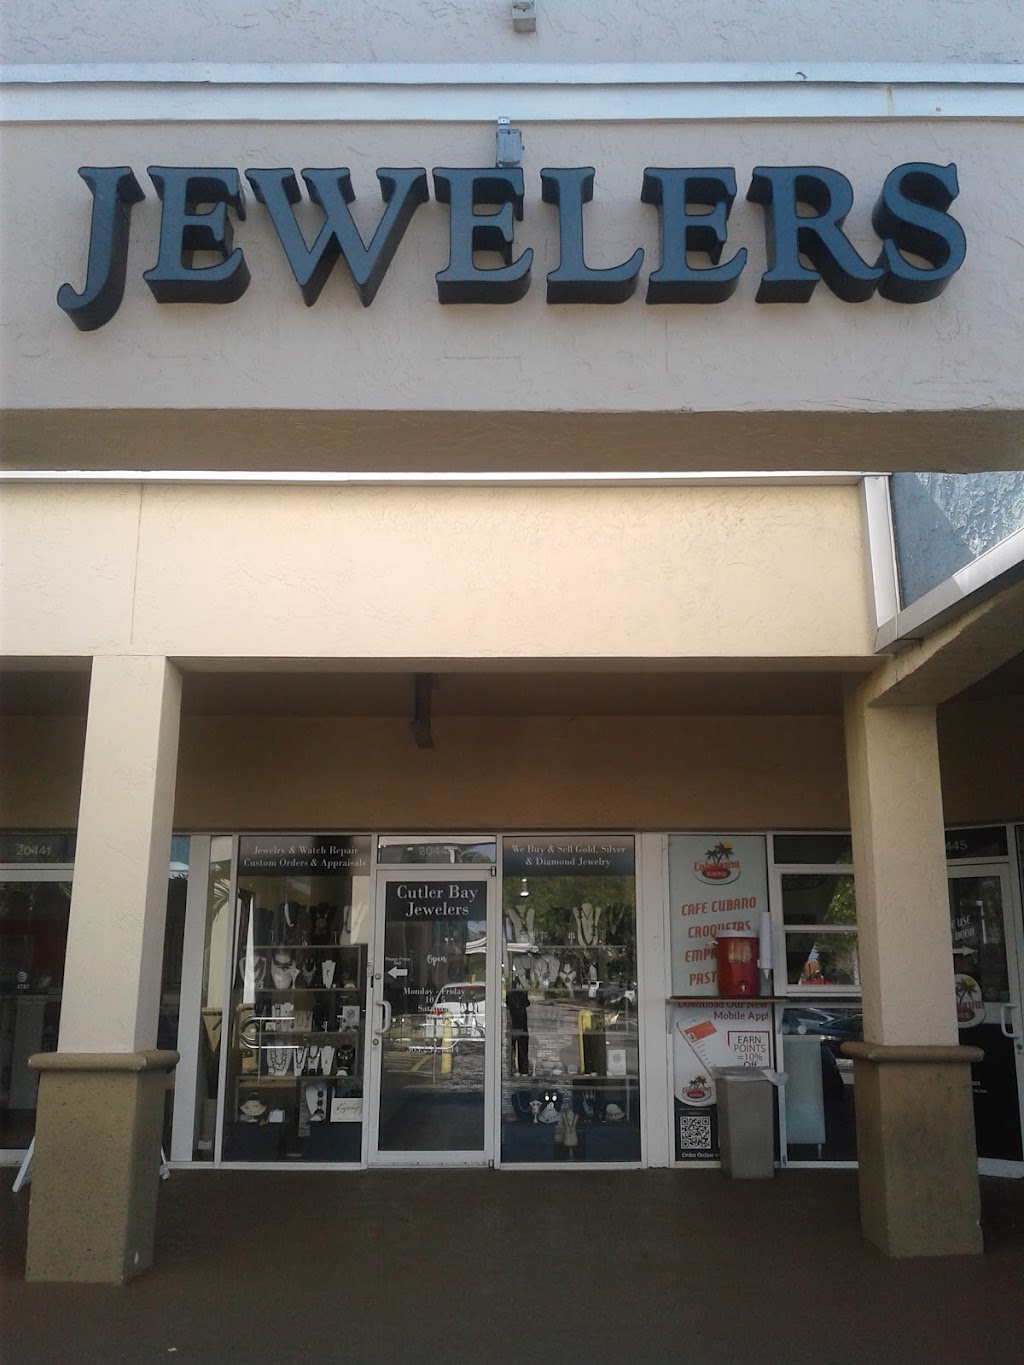 Cutler Bay Jewelers | 20443 Old Cutler Rd, Cutler Bay, FL 33189, USA | Phone: (305) 254-7144